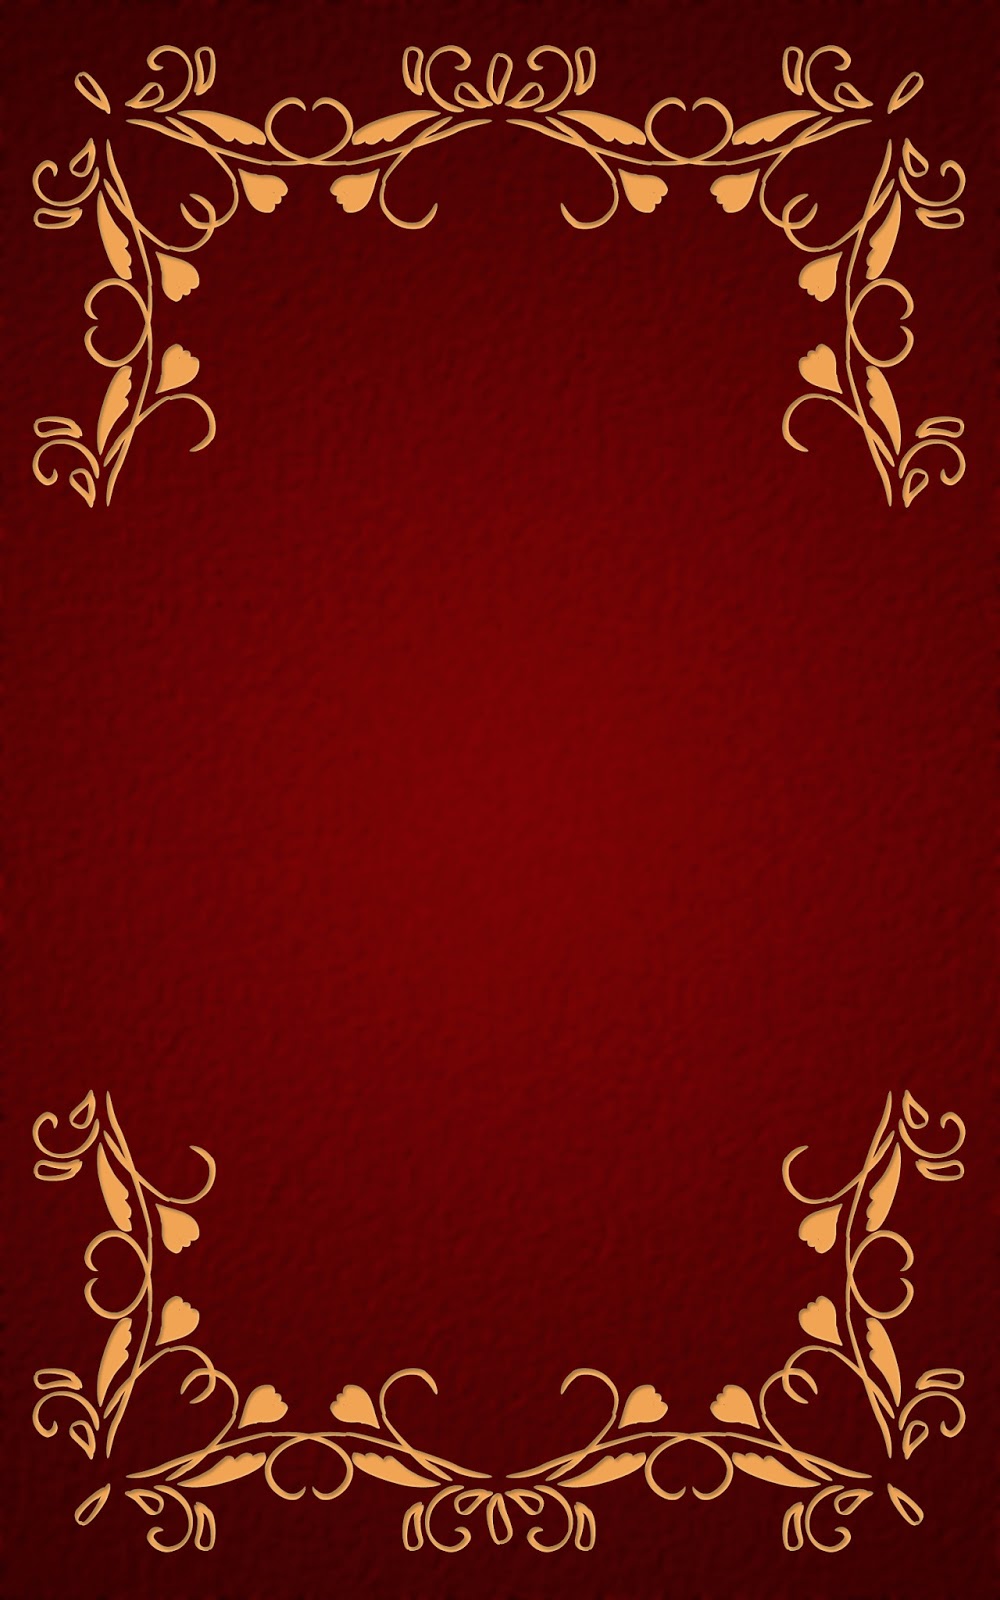 いーブックデザイン 電子書籍用表紙画像フリー素材 001 飾り罫 赤